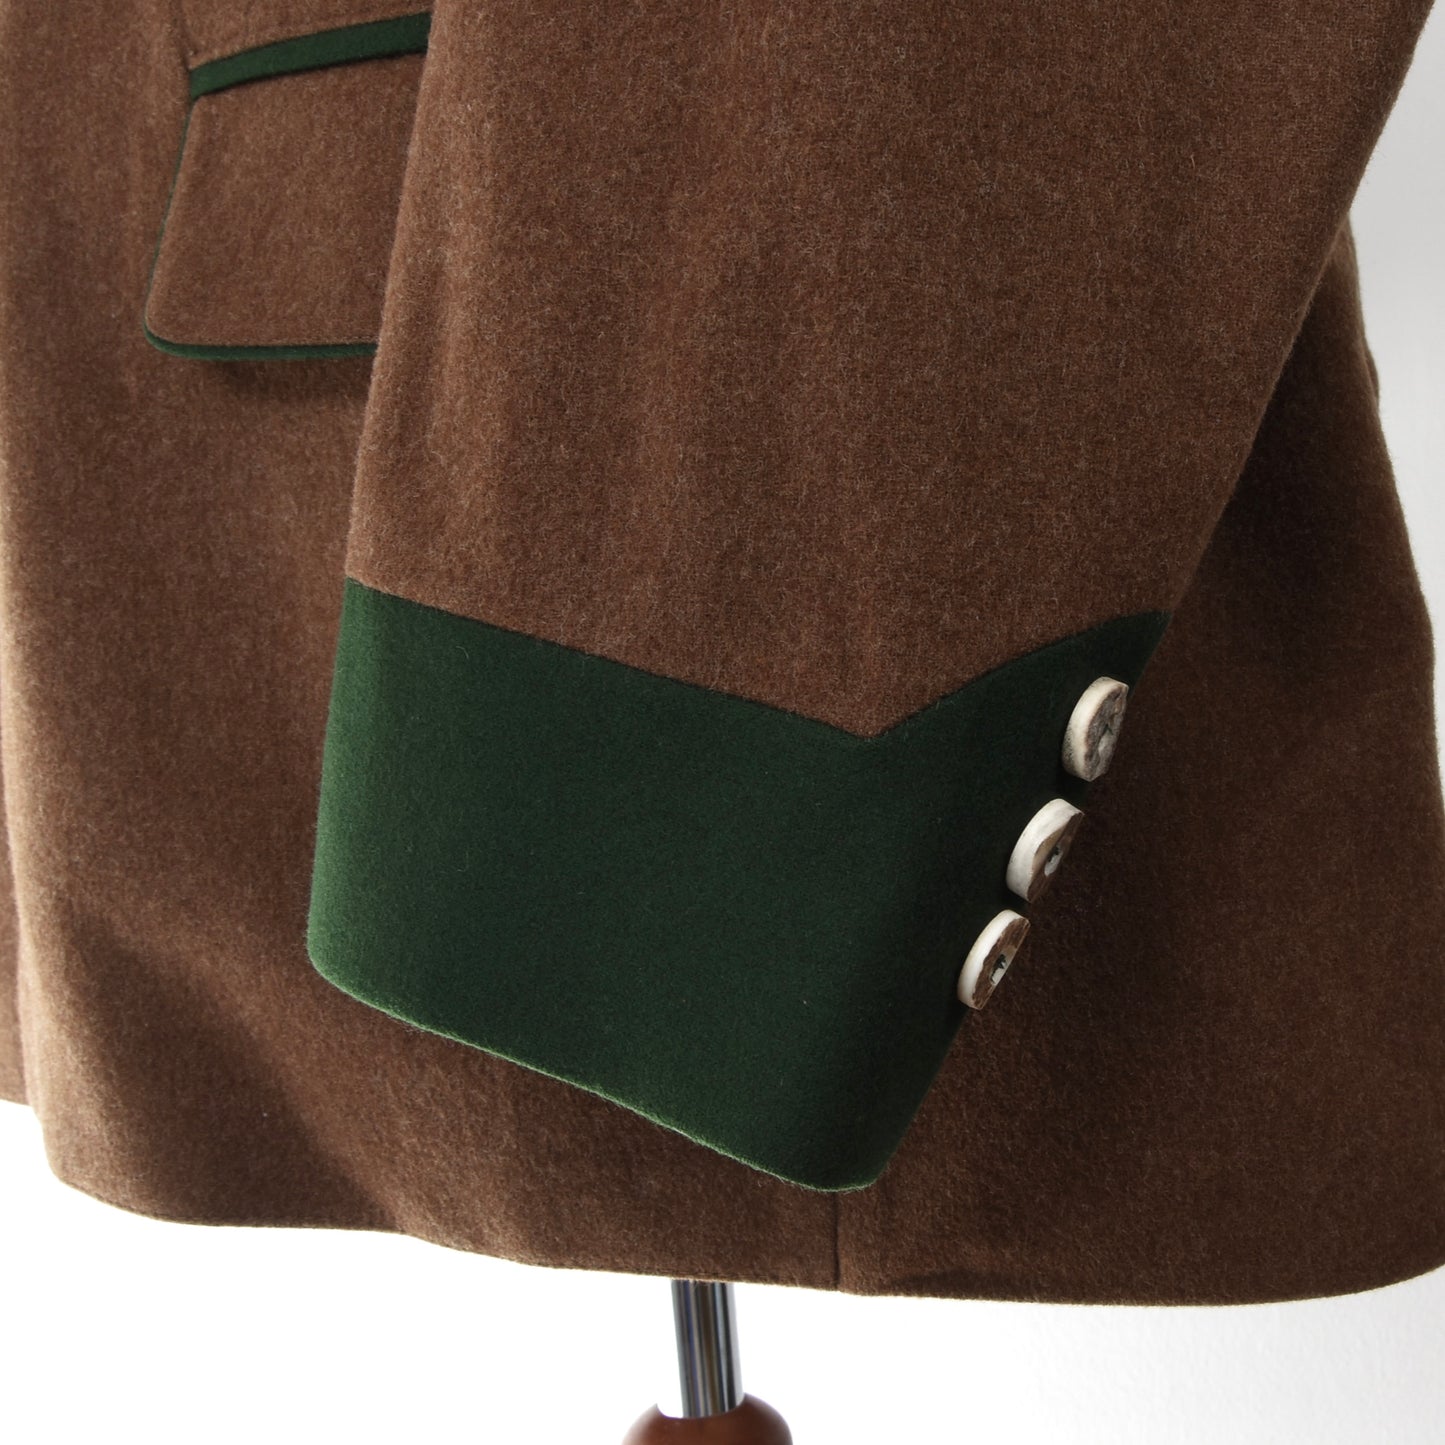 Loden Fürst Wool Janker/Jacket ca. 67cm - Brown